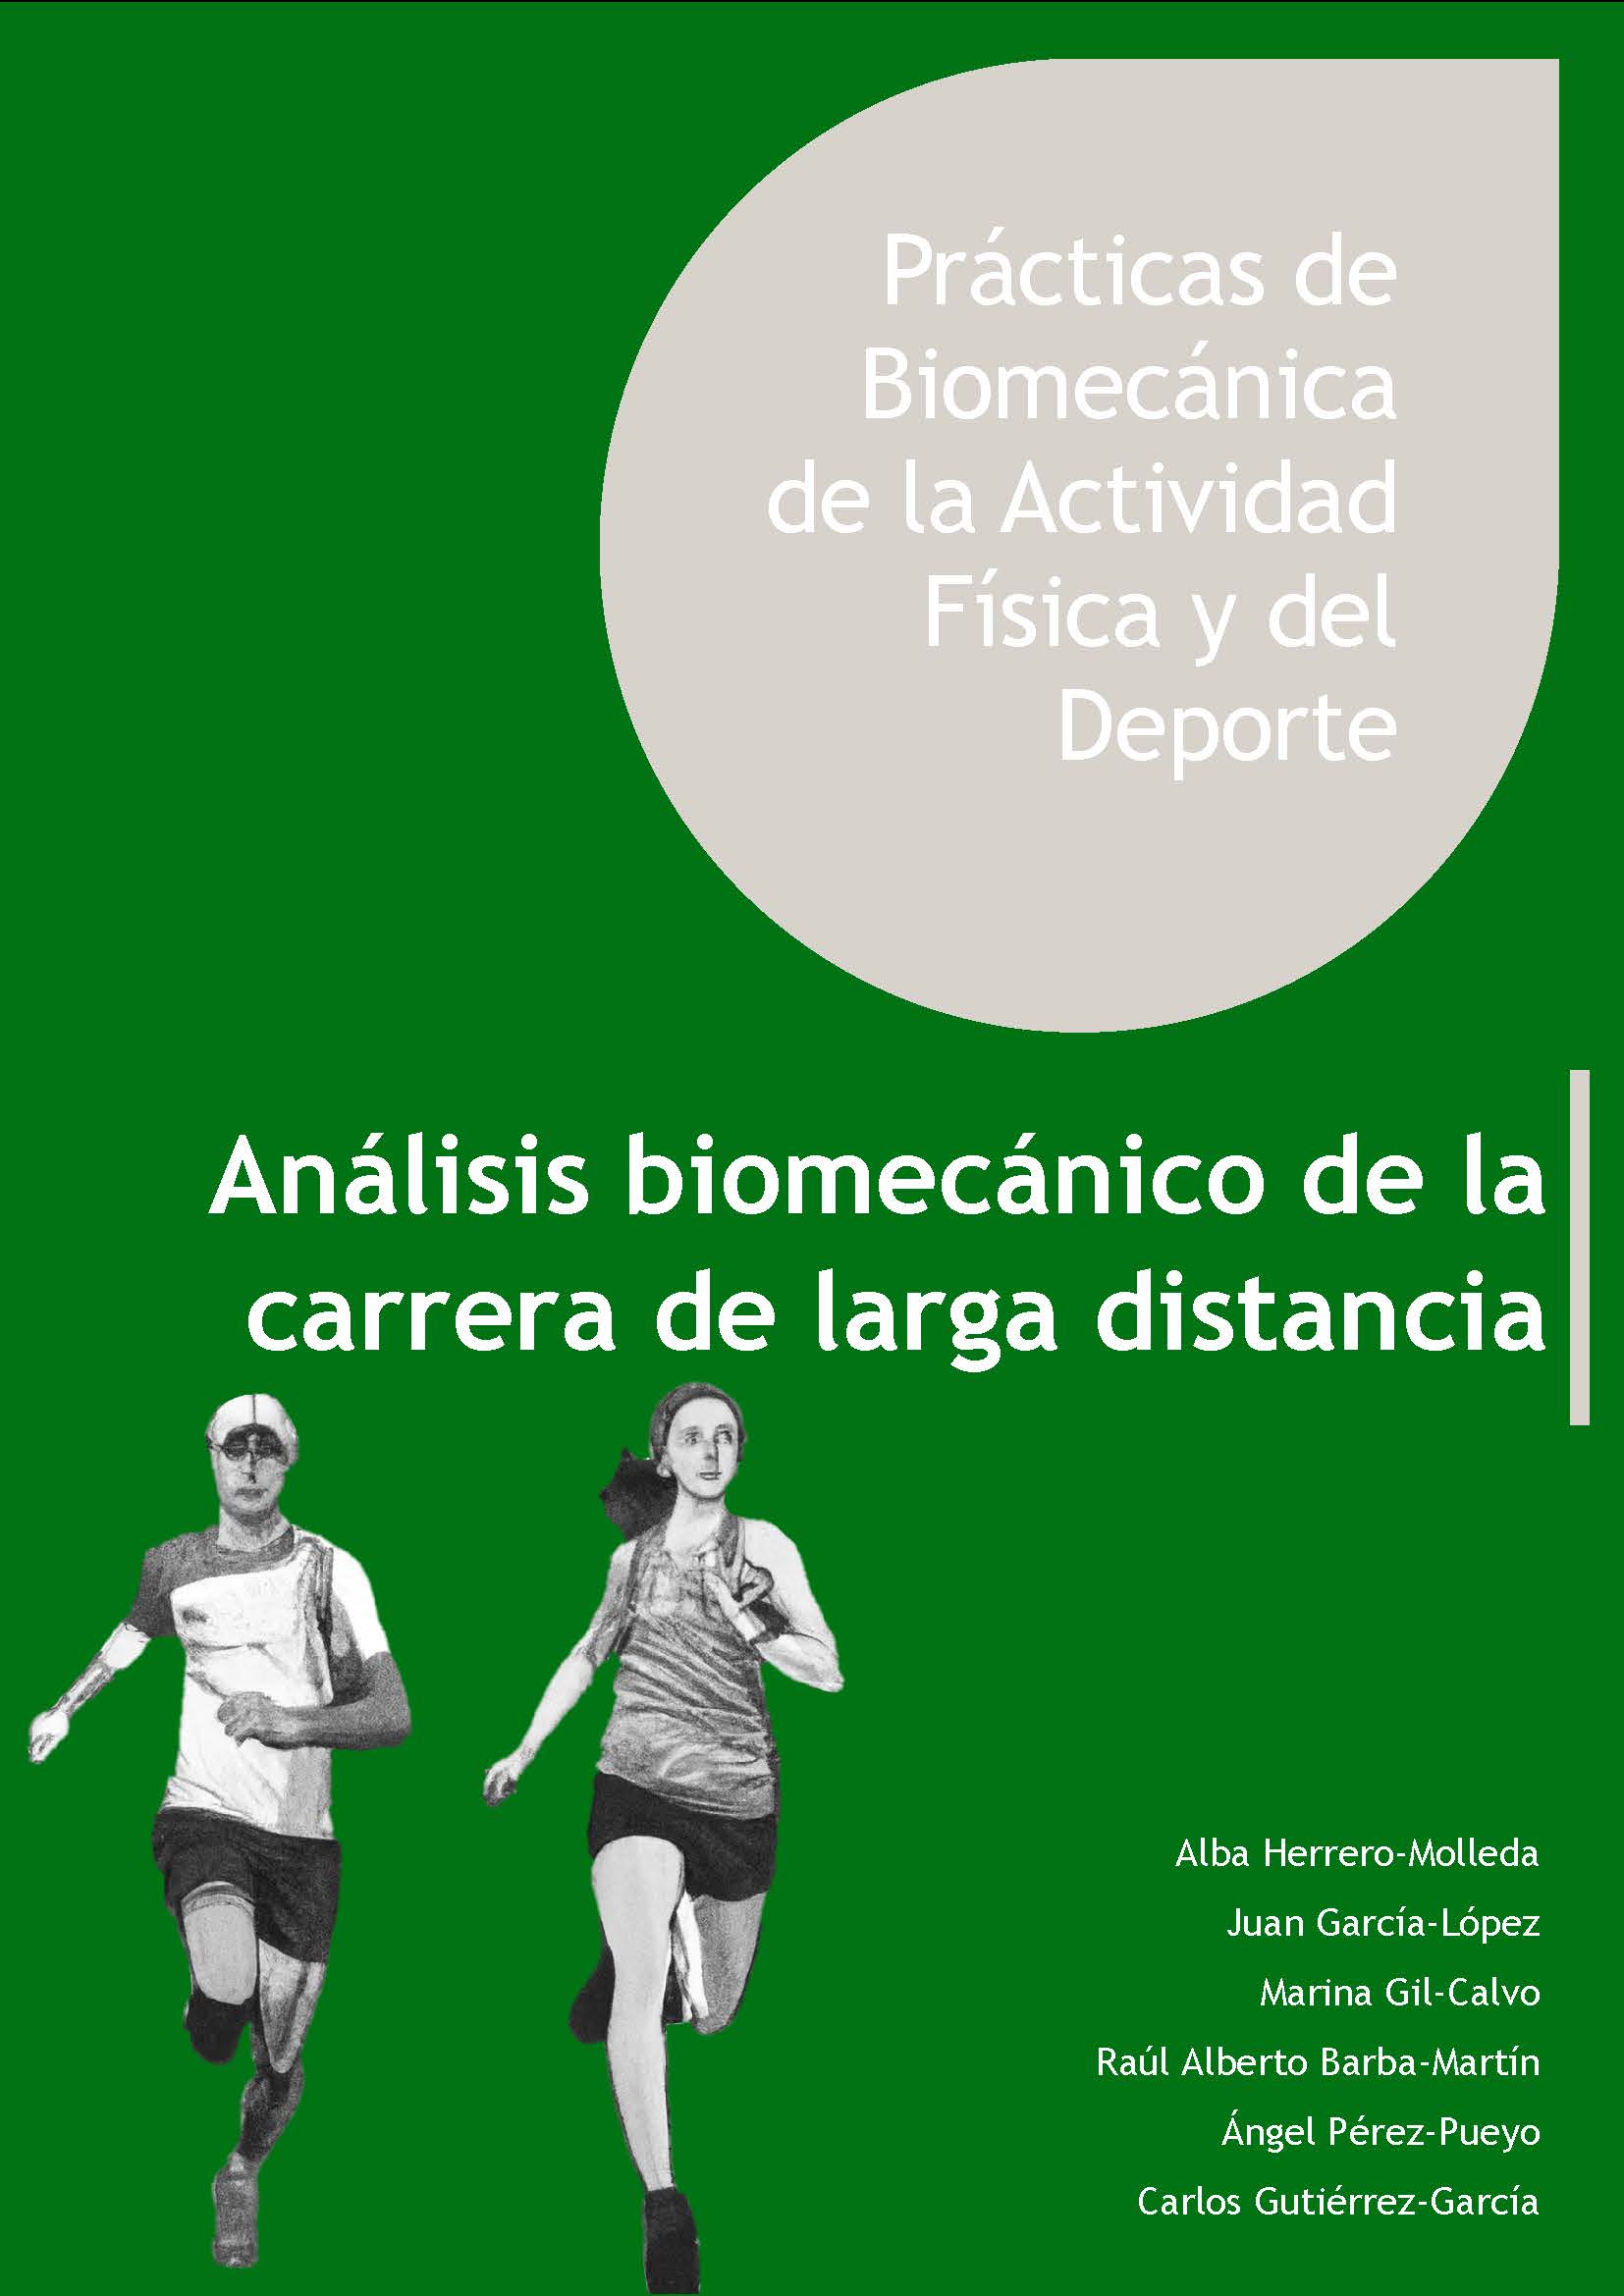 Imagen de portada del libro Prácticas de biomecánica de la actividad física y del deporte